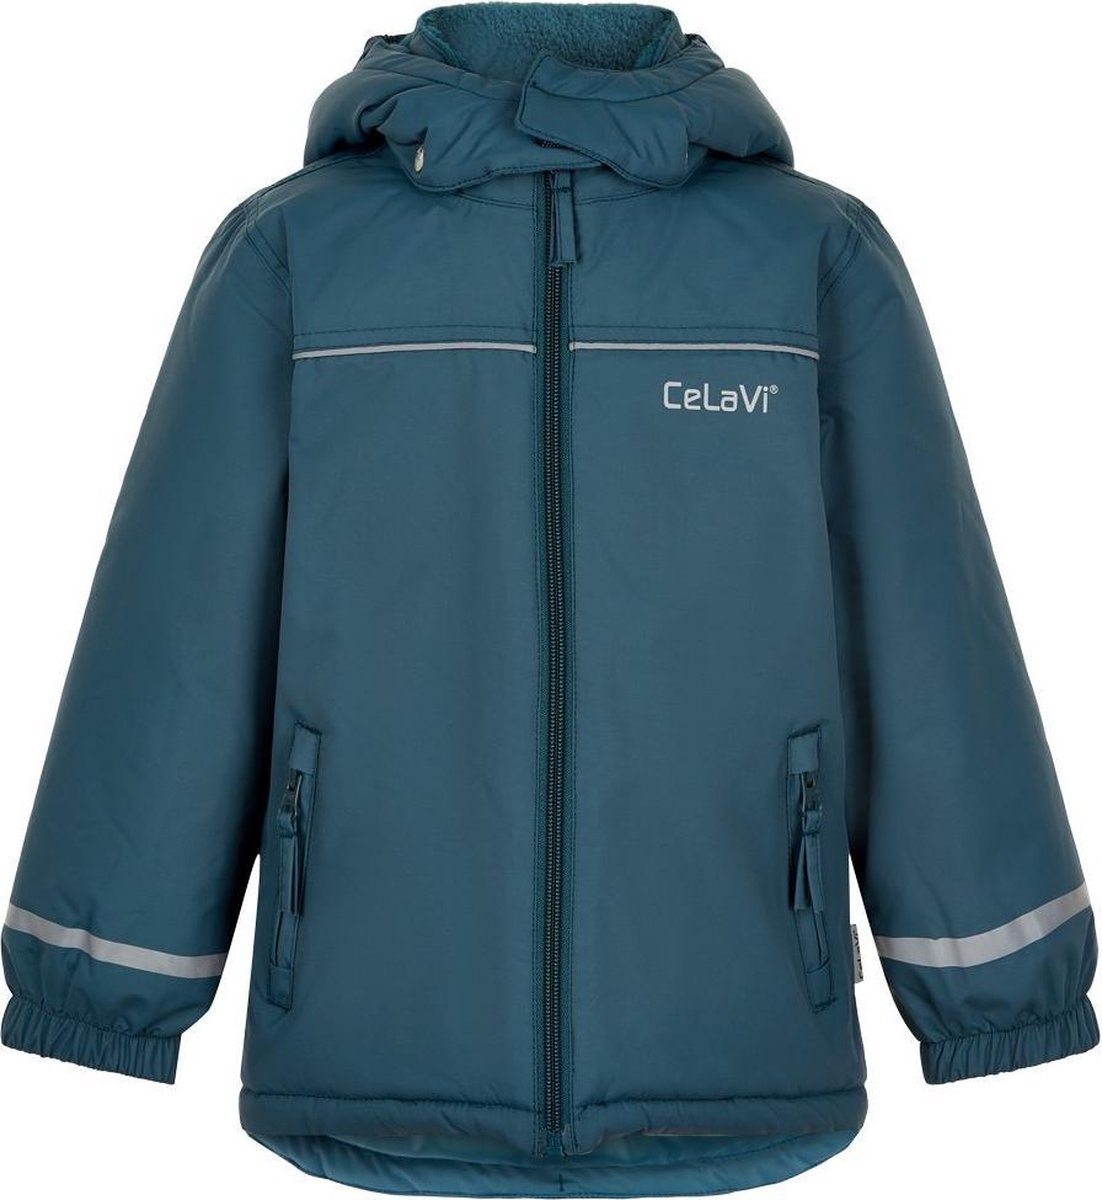 CeLaVi - Ski-jas voor kinderen - Solid - IJsblauw - maat 92cm